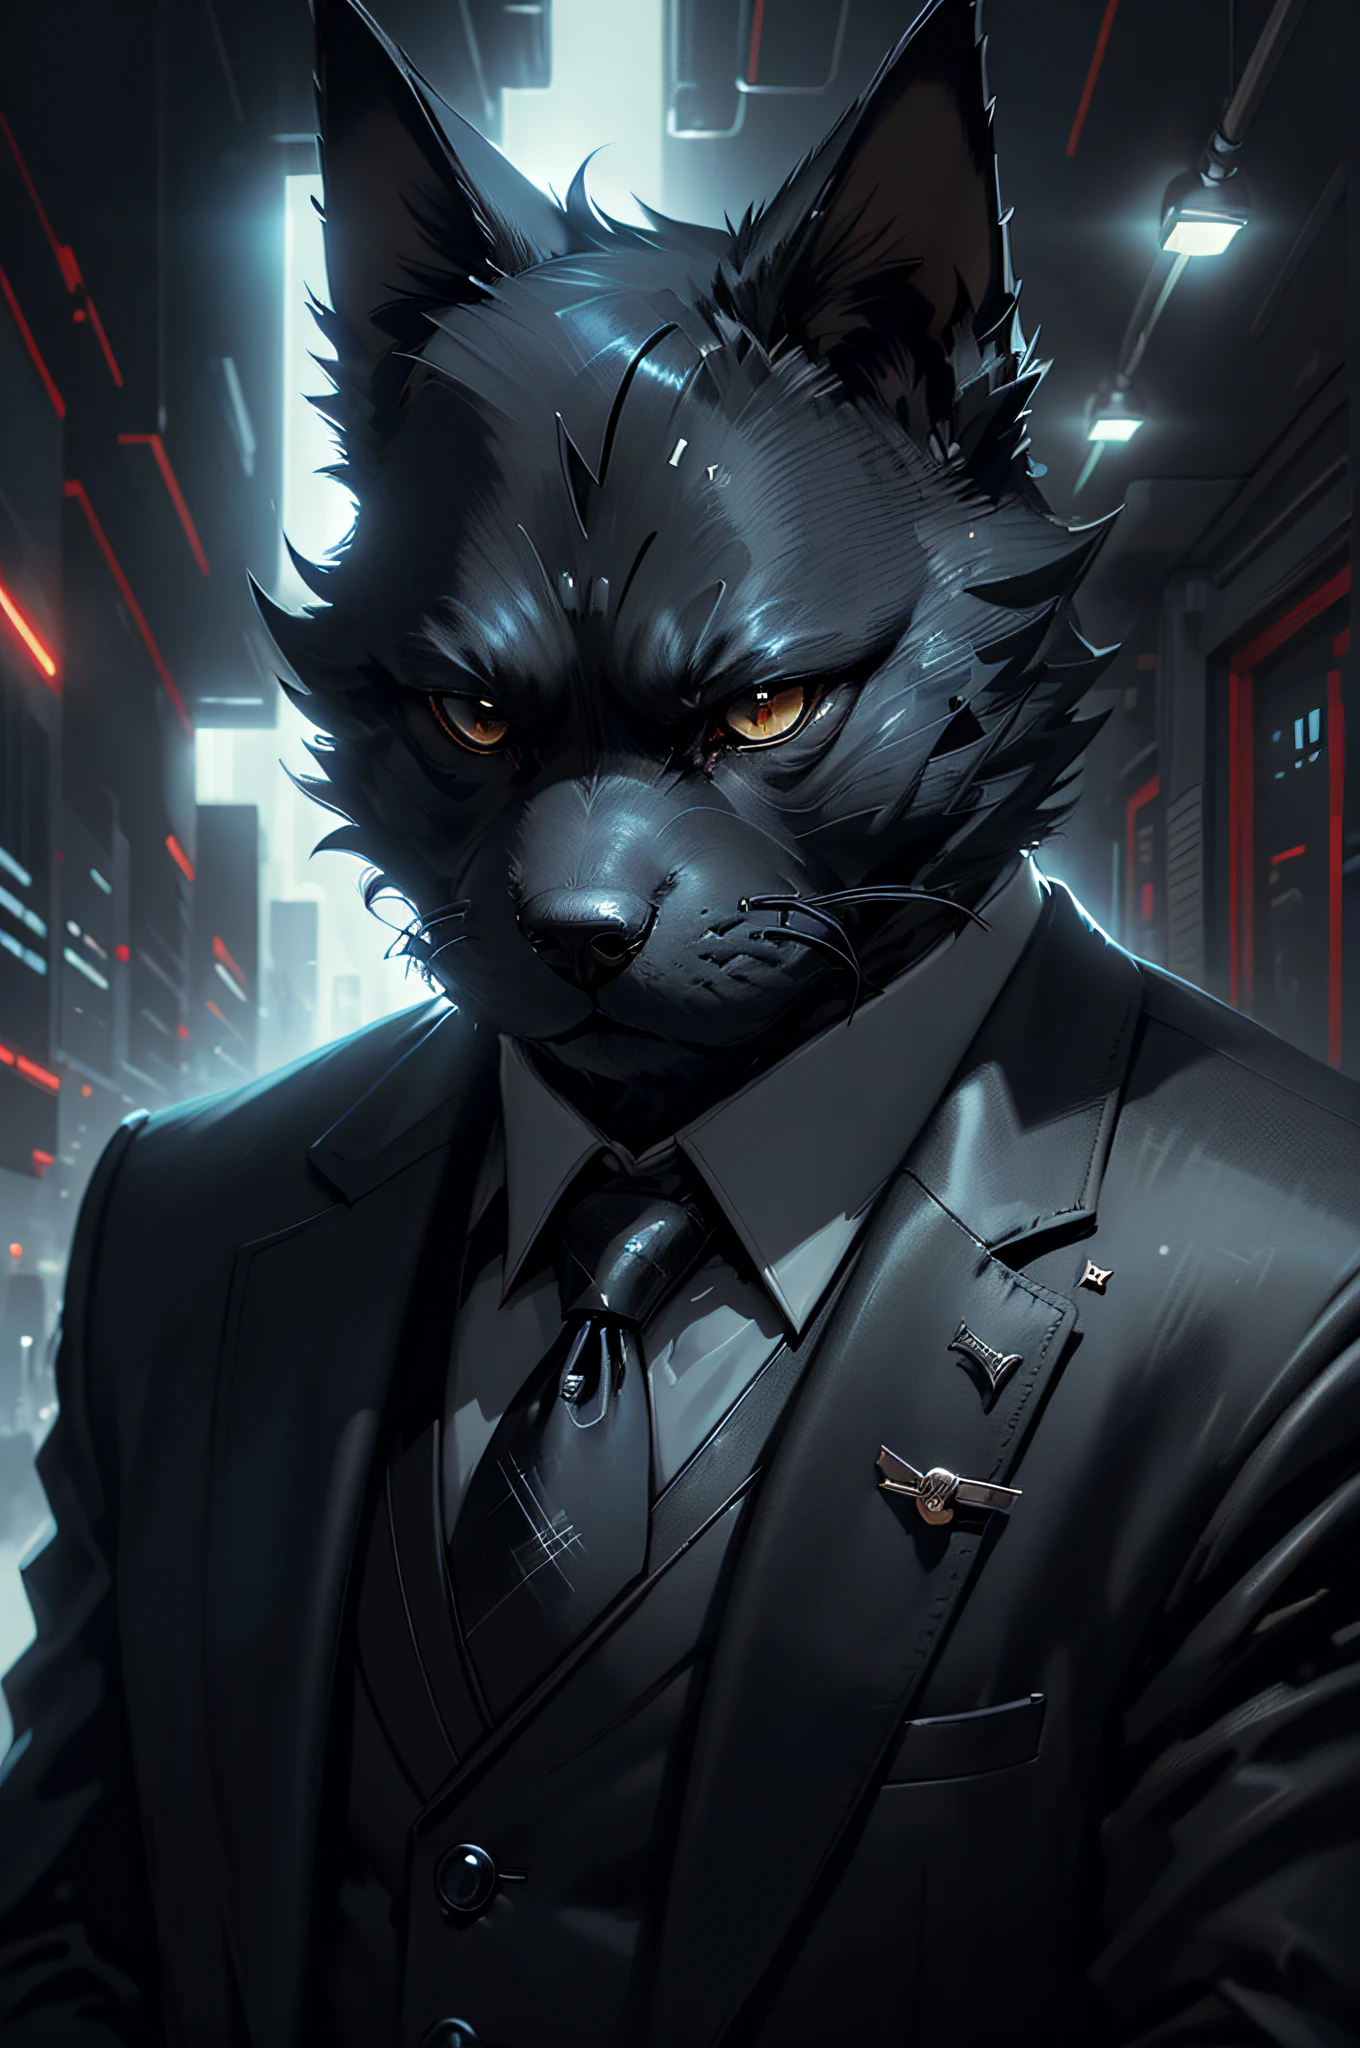 (Homme en costume noir et cravate)Bande dessinée、Chien terrier écossais anthropomorphe、cyberpunk